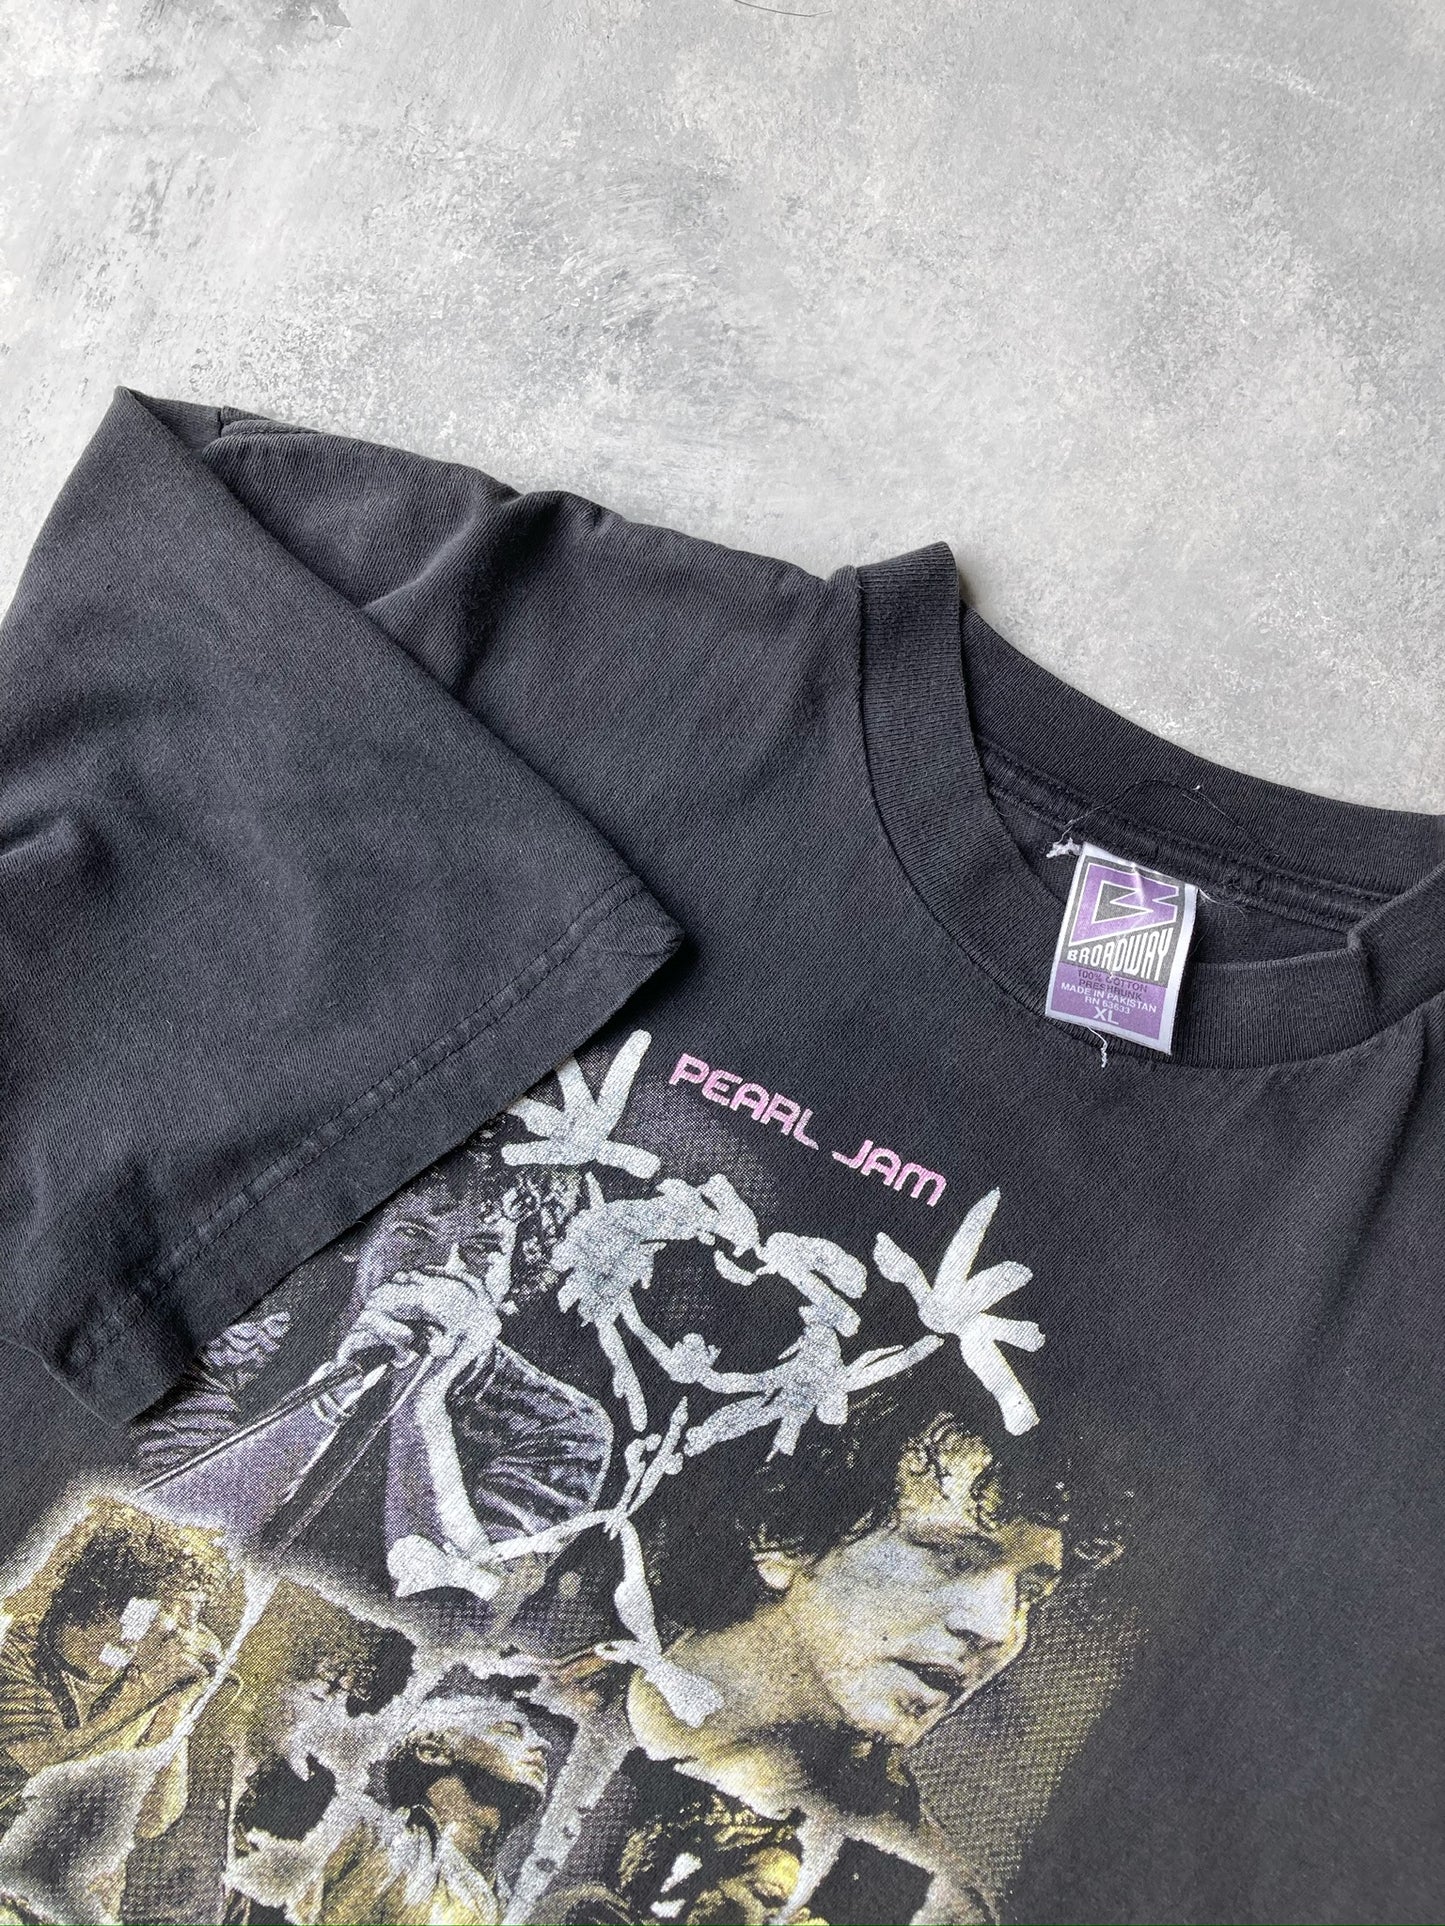 Pearl Jam BL Alive Tour T-Shirt '00 - XL